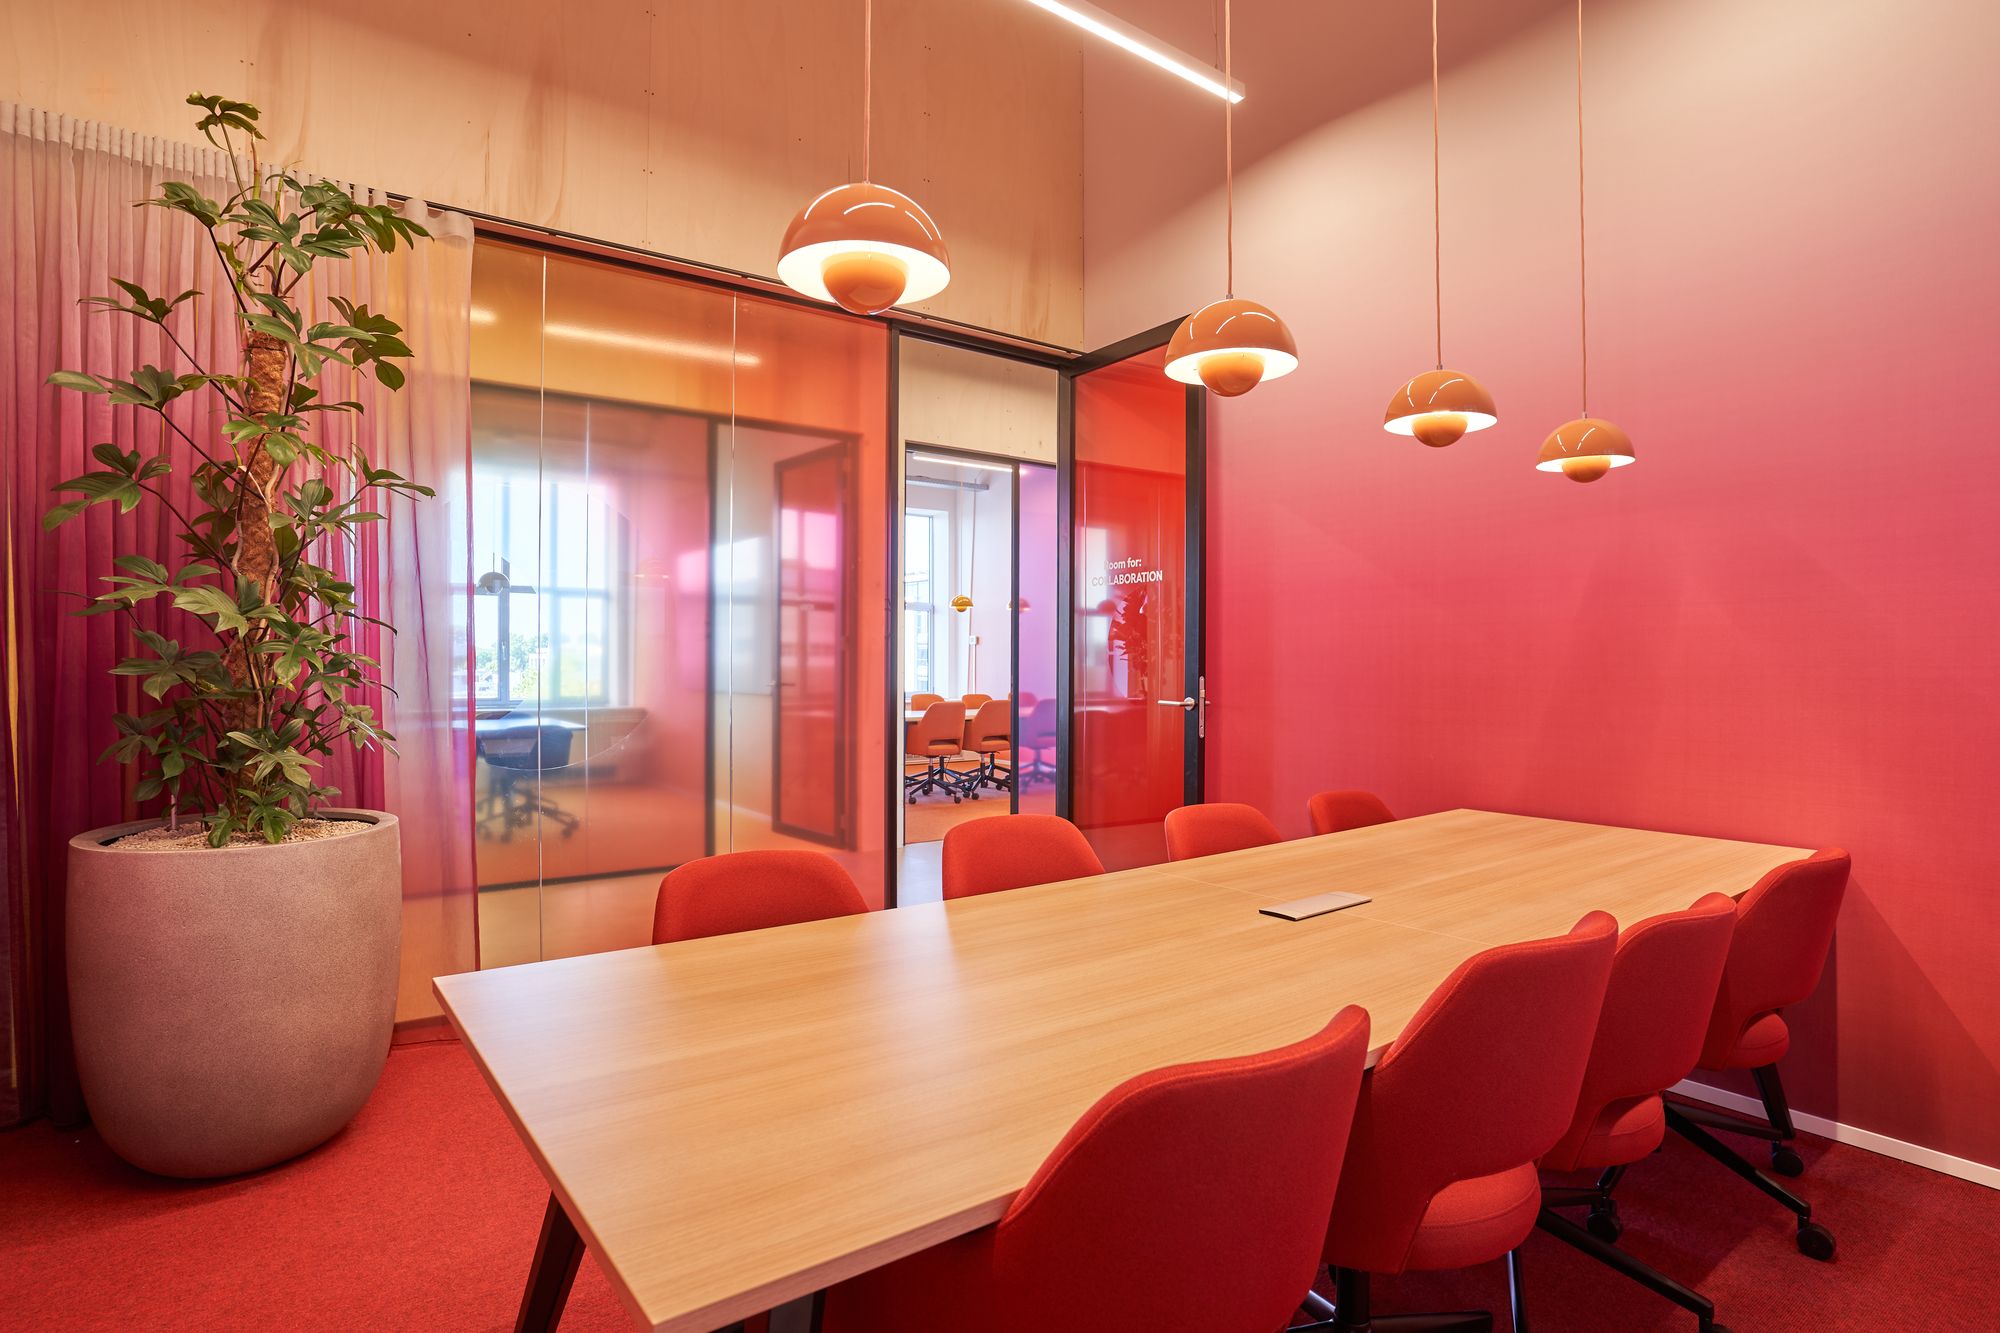 图片[6]|Sunrock办公室-阿姆斯特丹|ART-Arrakis | 建筑室内设计的创新与灵感